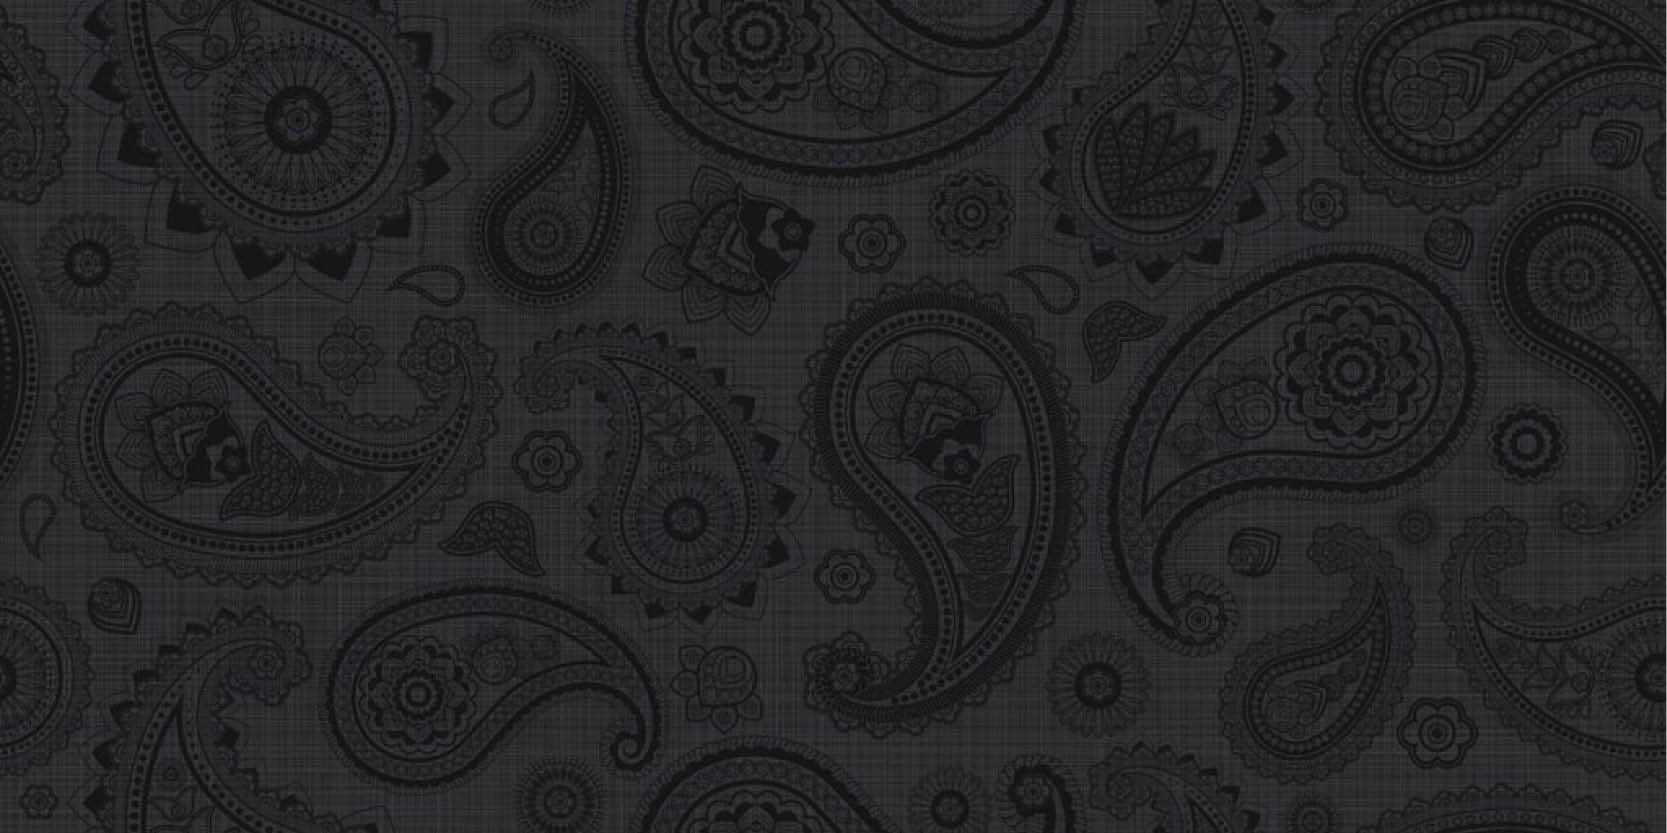 sammys-designer-flooring-tile-full-size-paisley-black-pattern.jpg